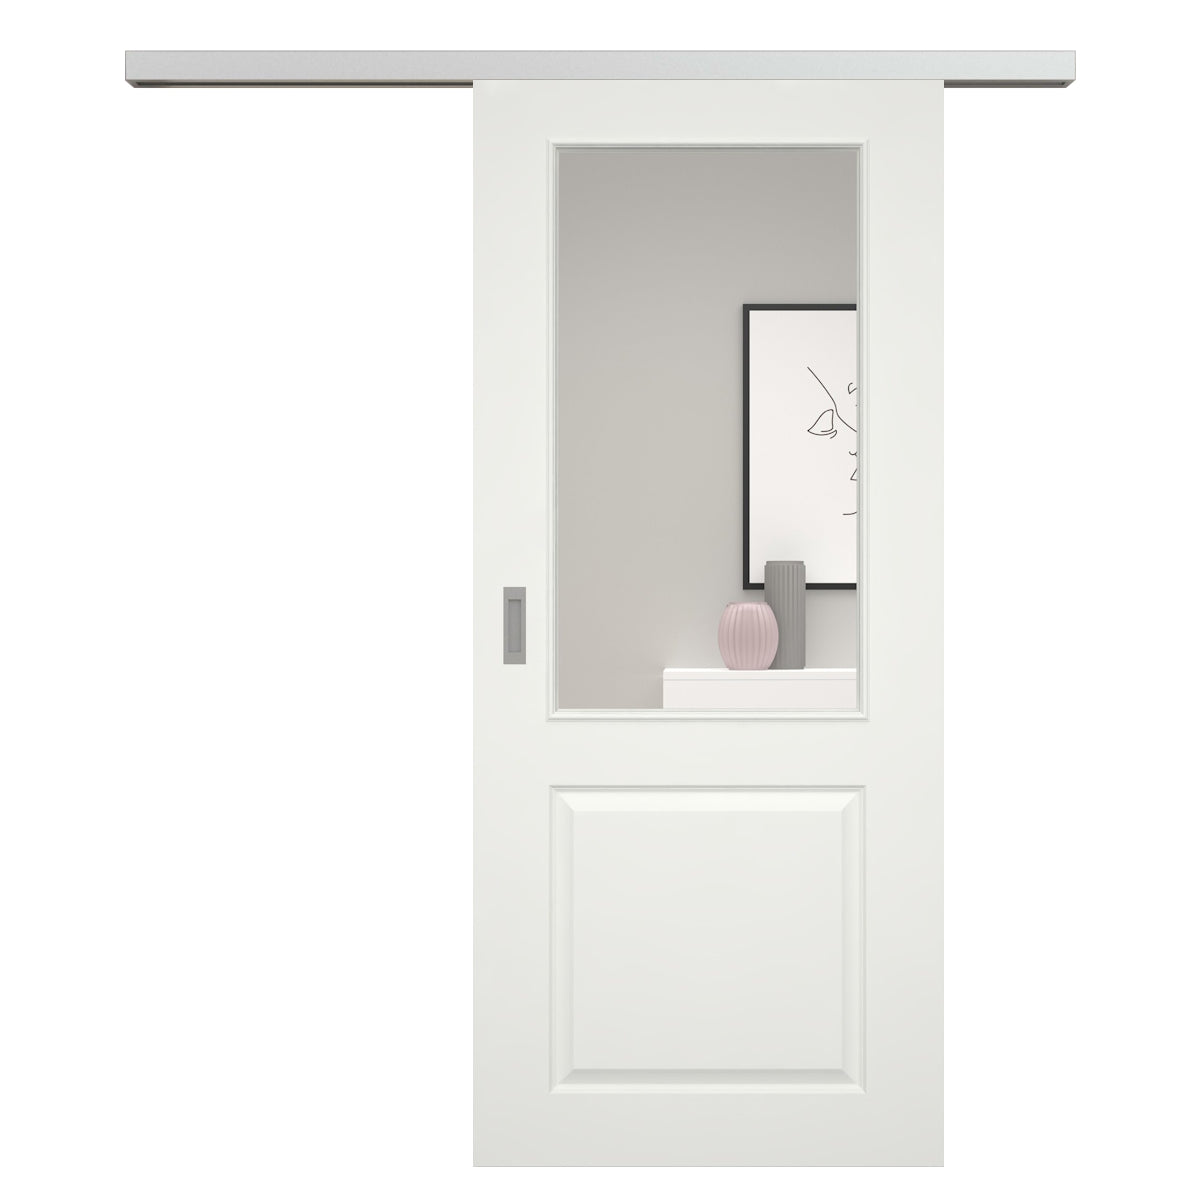 Schiebetür für Set mit Edelstahllaufkasten soft-weiß Stiltür mit 2 Kassetten und Lichtausschnitt - Modell Stiltür K21LA